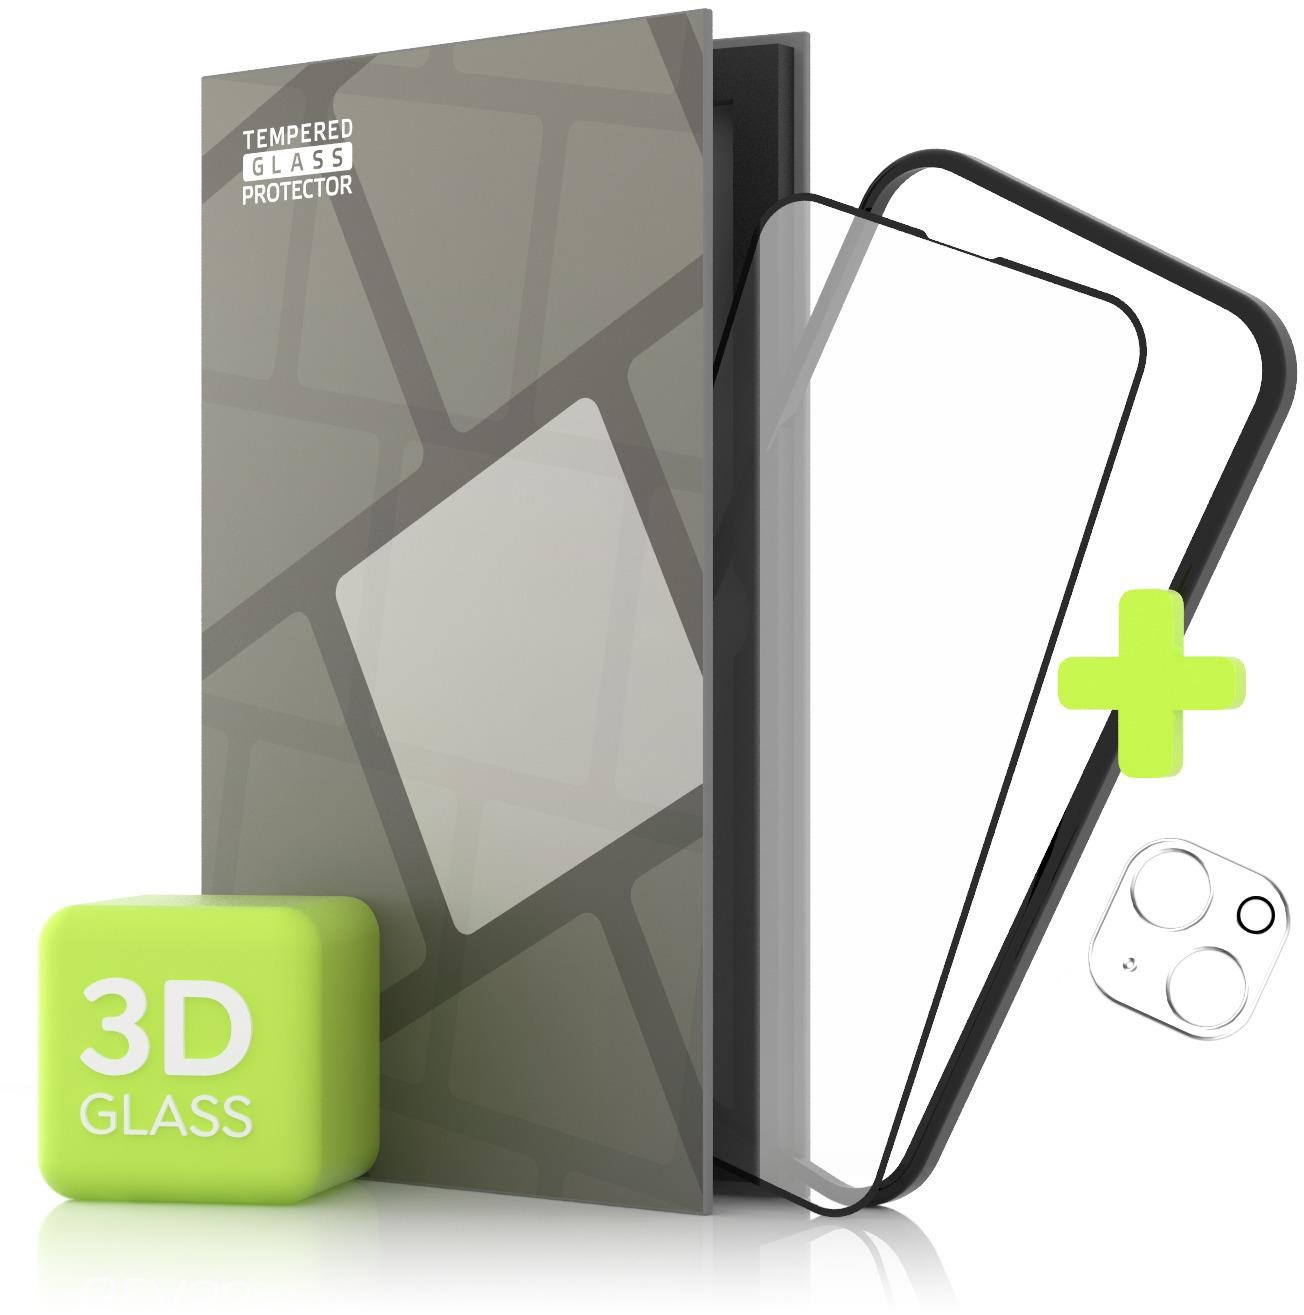 Üvegfólia Tempered Glass Protector az iPhone 13 mini készülékhez